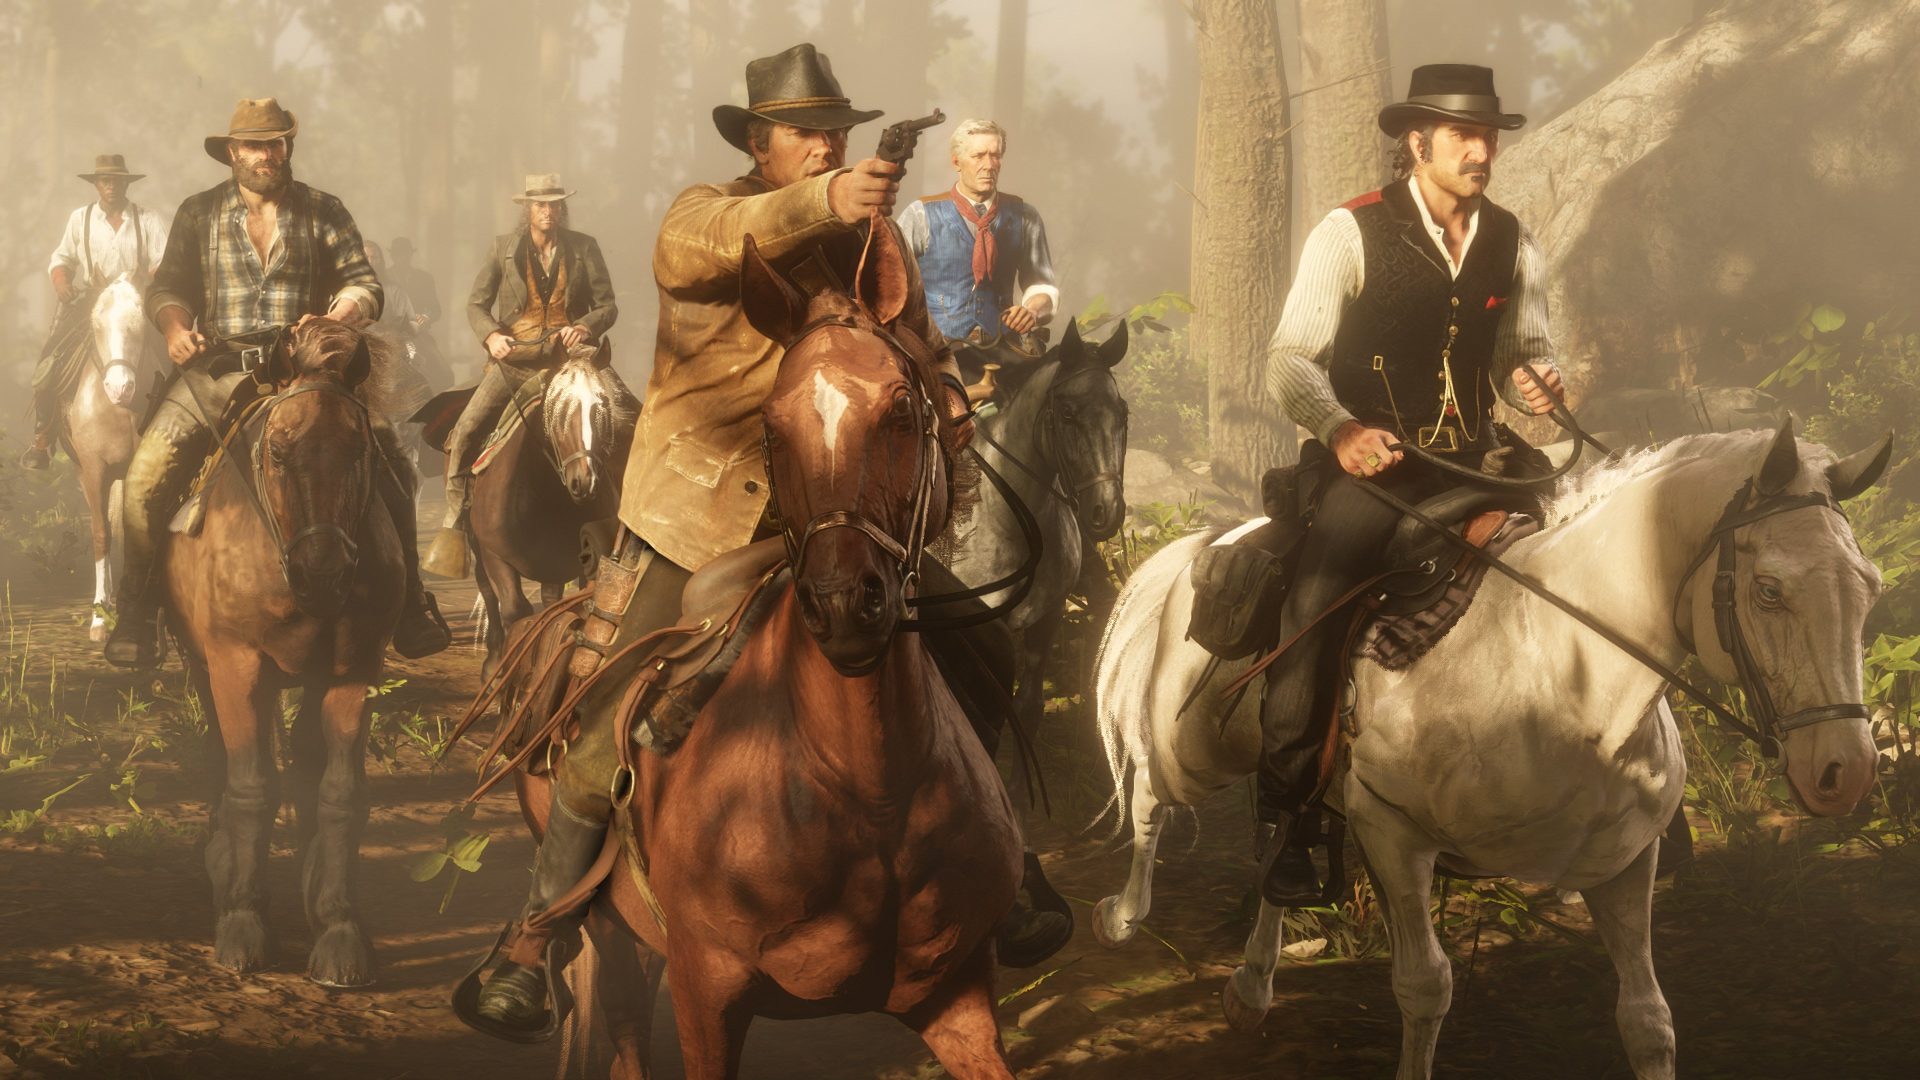 Red Dead Redemption 2 สุดยอดเกมคาวบอยแห่งยุคคว้ารางวัลเกมแห่งปี 2020 จากทาง The Steam Awards 